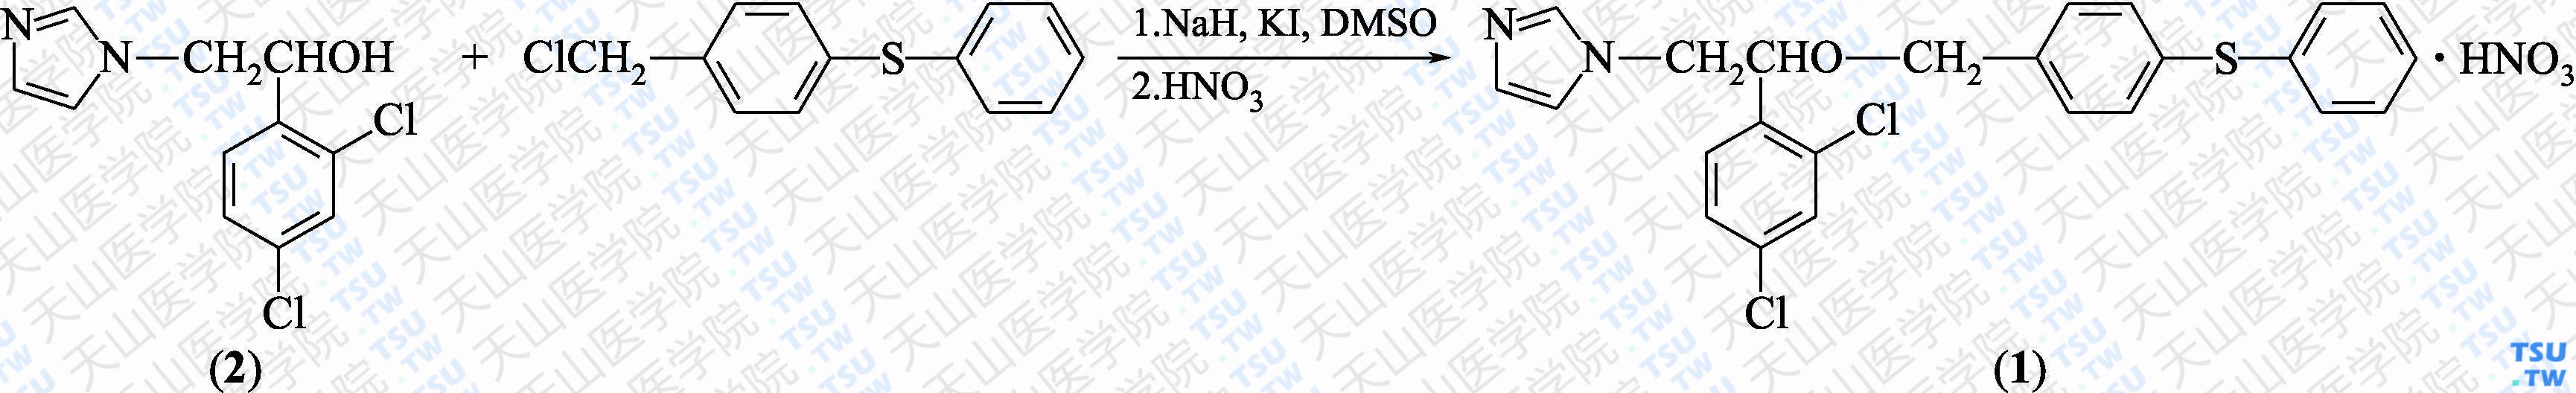 硝酸芬替康唑（分子式：C<sub>24</sub>H<sub>20</sub>Cl<sub>2</sub>N<sub>2</sub>OS·HNO<sub>3</sub>）的合成方法路线及其结构式